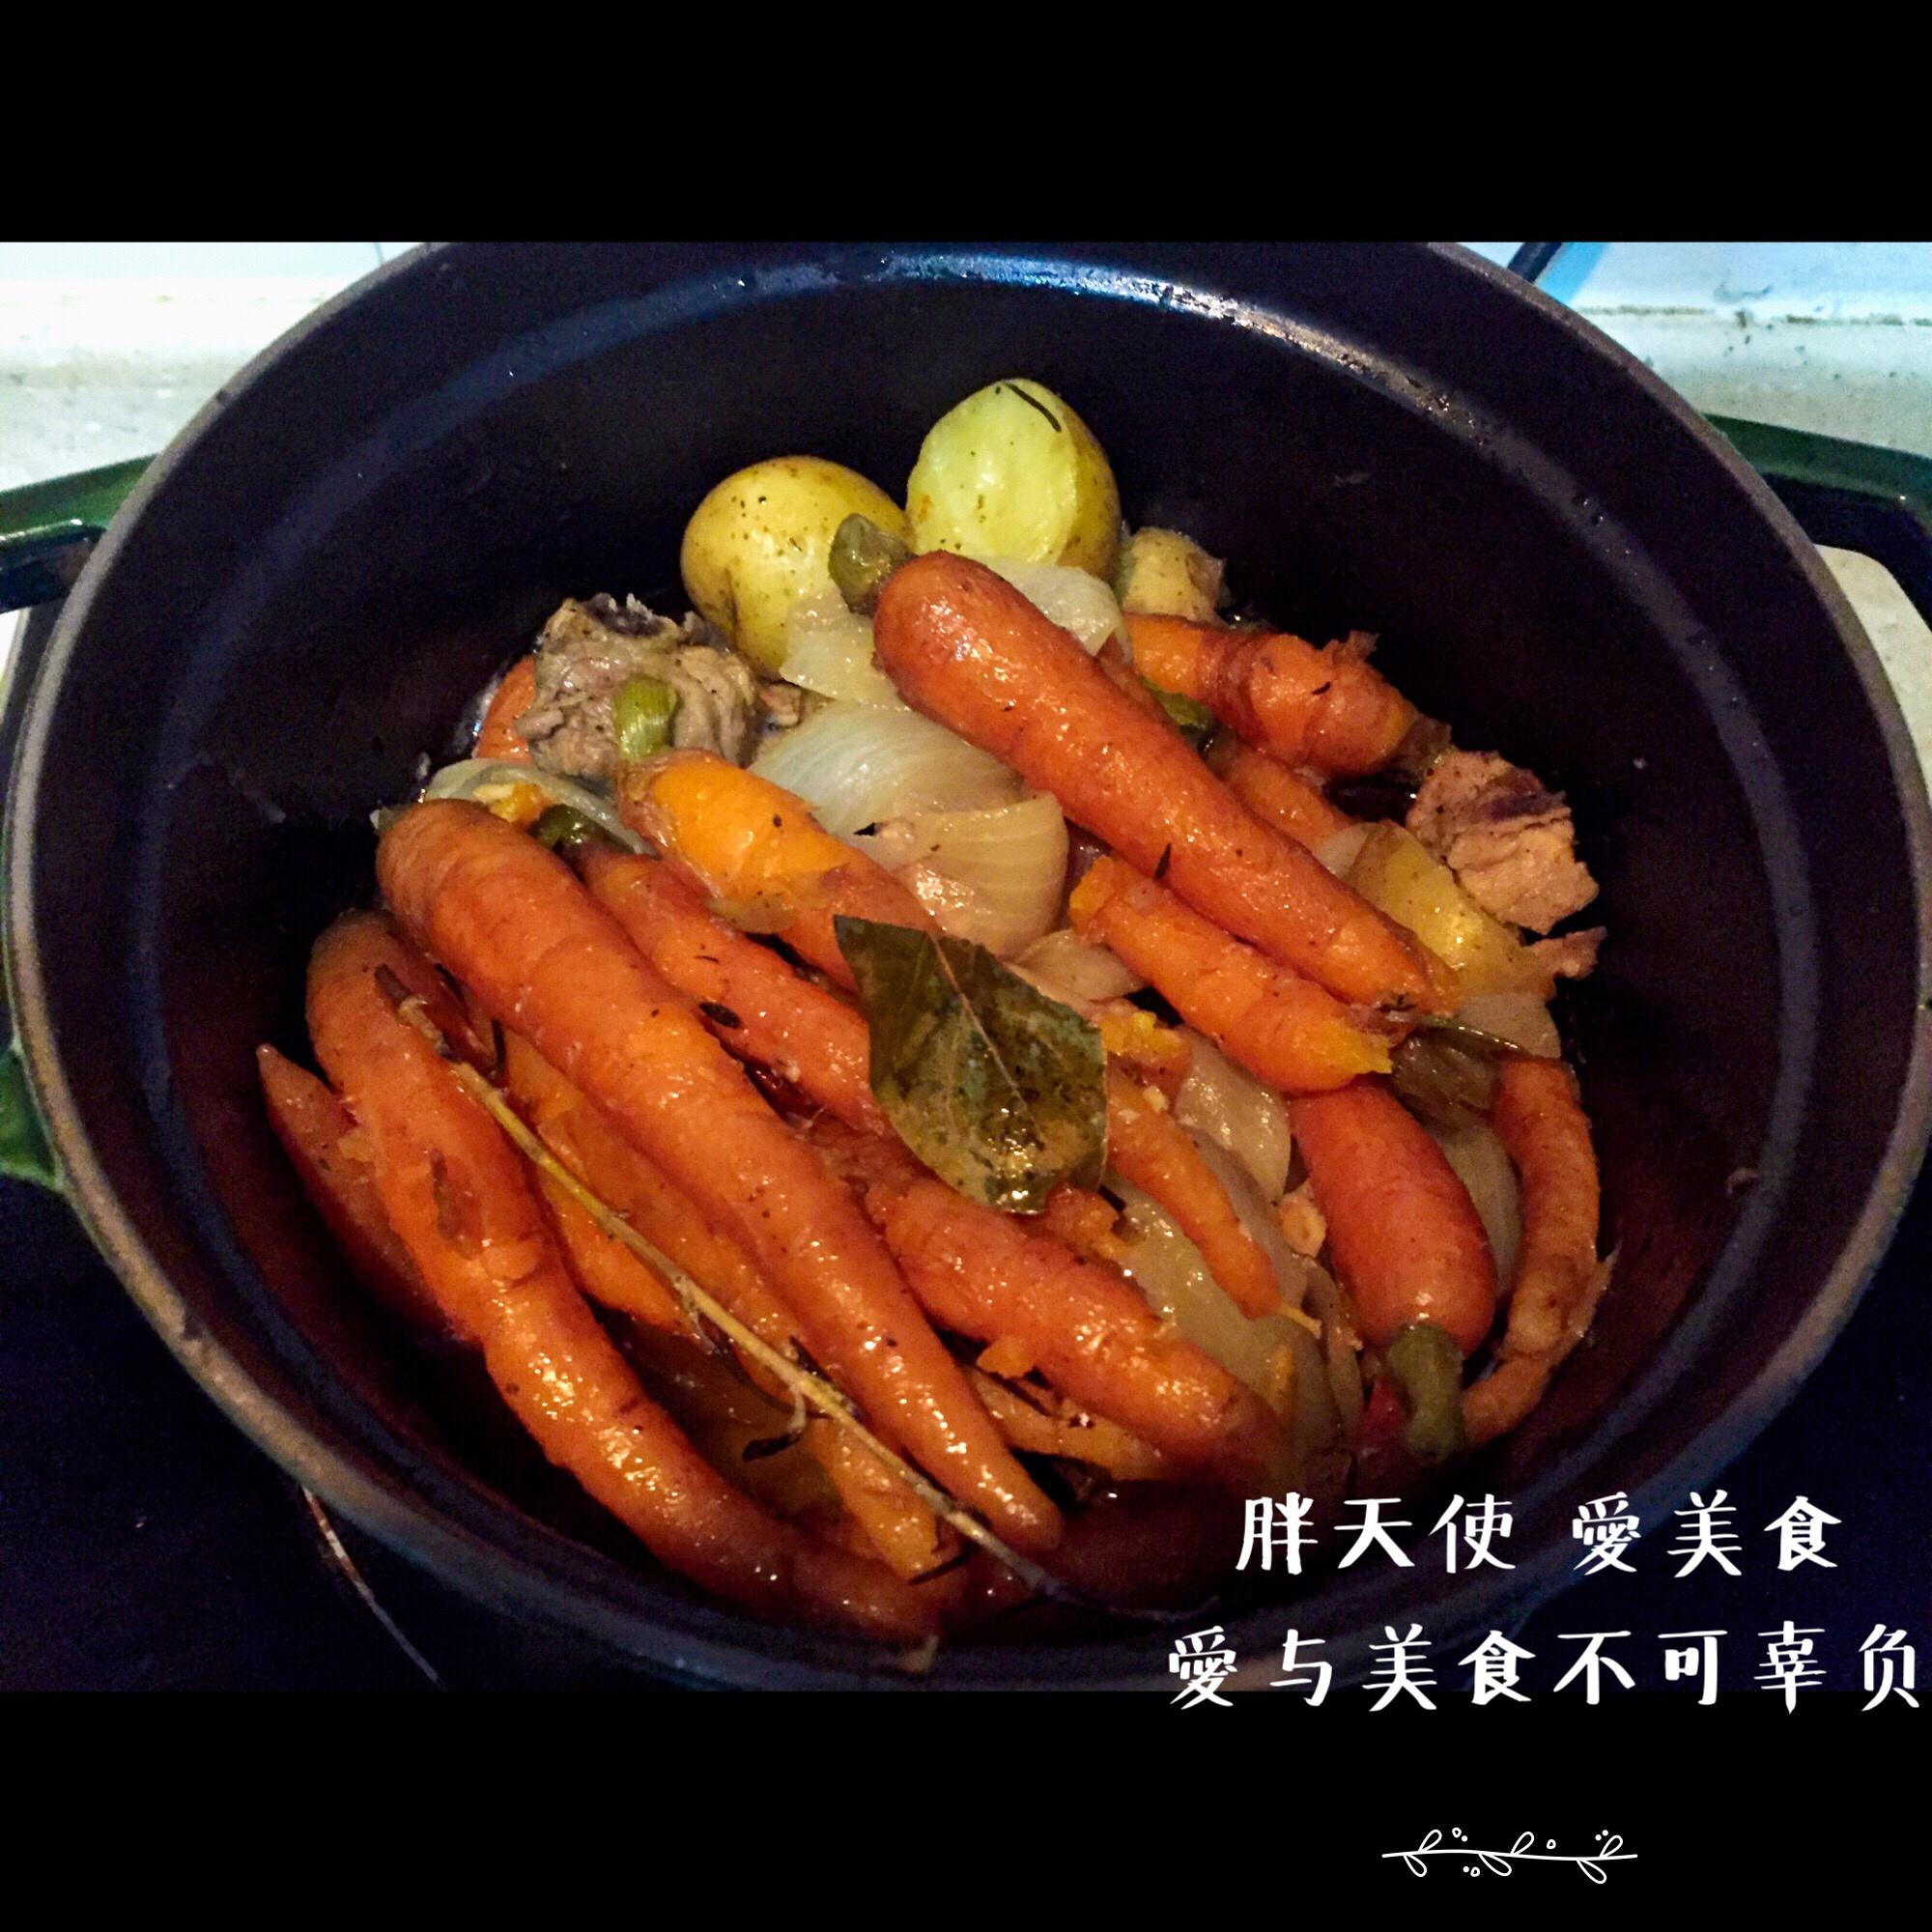 蒸煮火腿佐时蔬 - 源自今泉久美《爱上铸铁锅》的做法